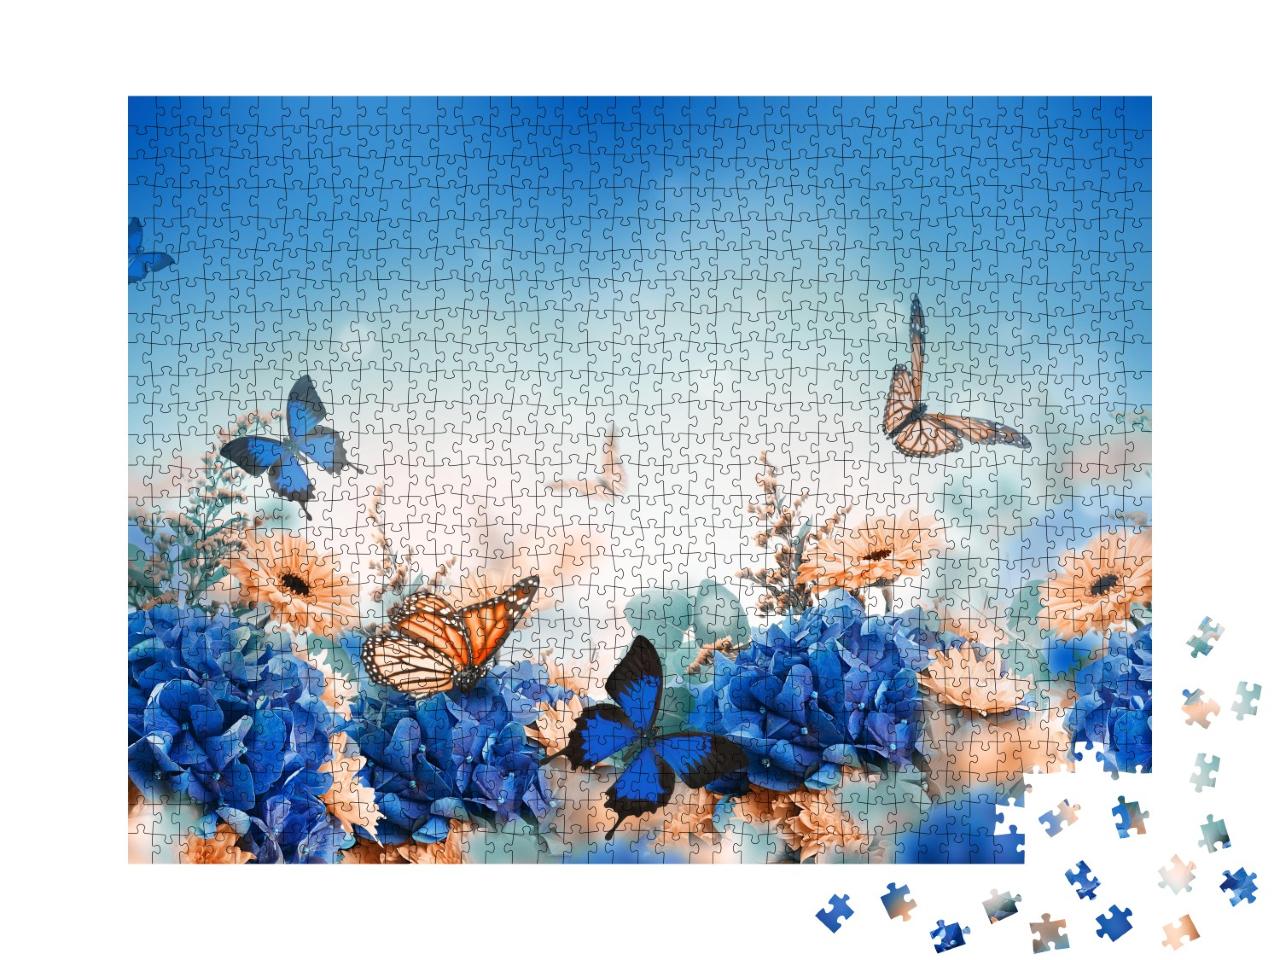 Puzzle de 1000 pièces « Hortensias et papillons »